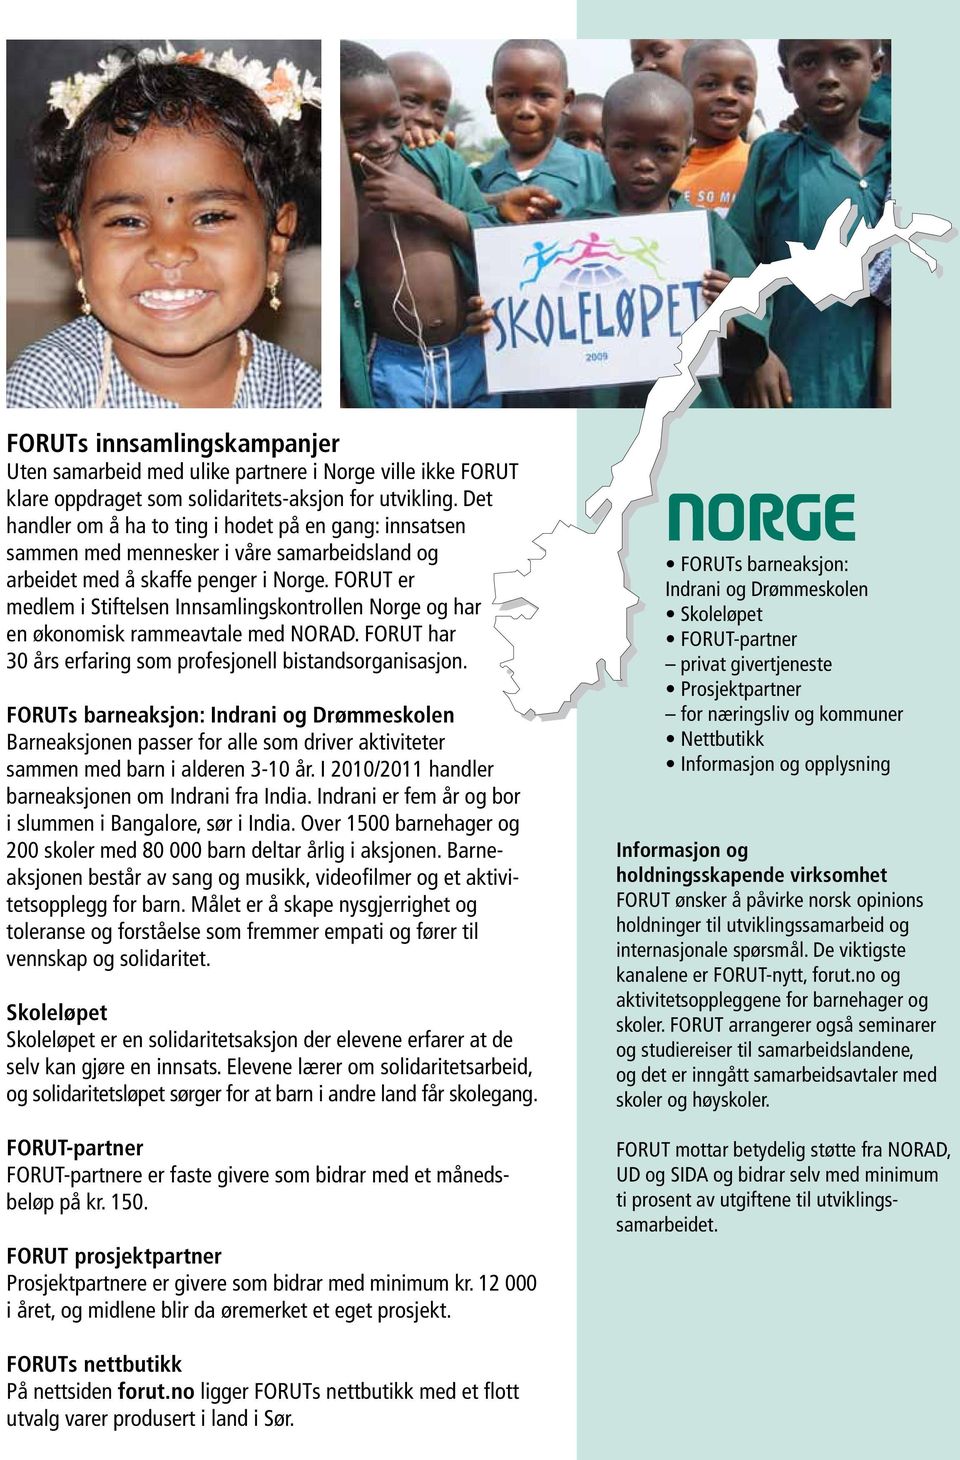 FORUT er medlem i Stiftelsen Innsamlingskontrollen Norge og har en økonomisk rammeavtale med NORAD. FORUT har 30 års erfaring som profesjonell bistandsorganisasjon.